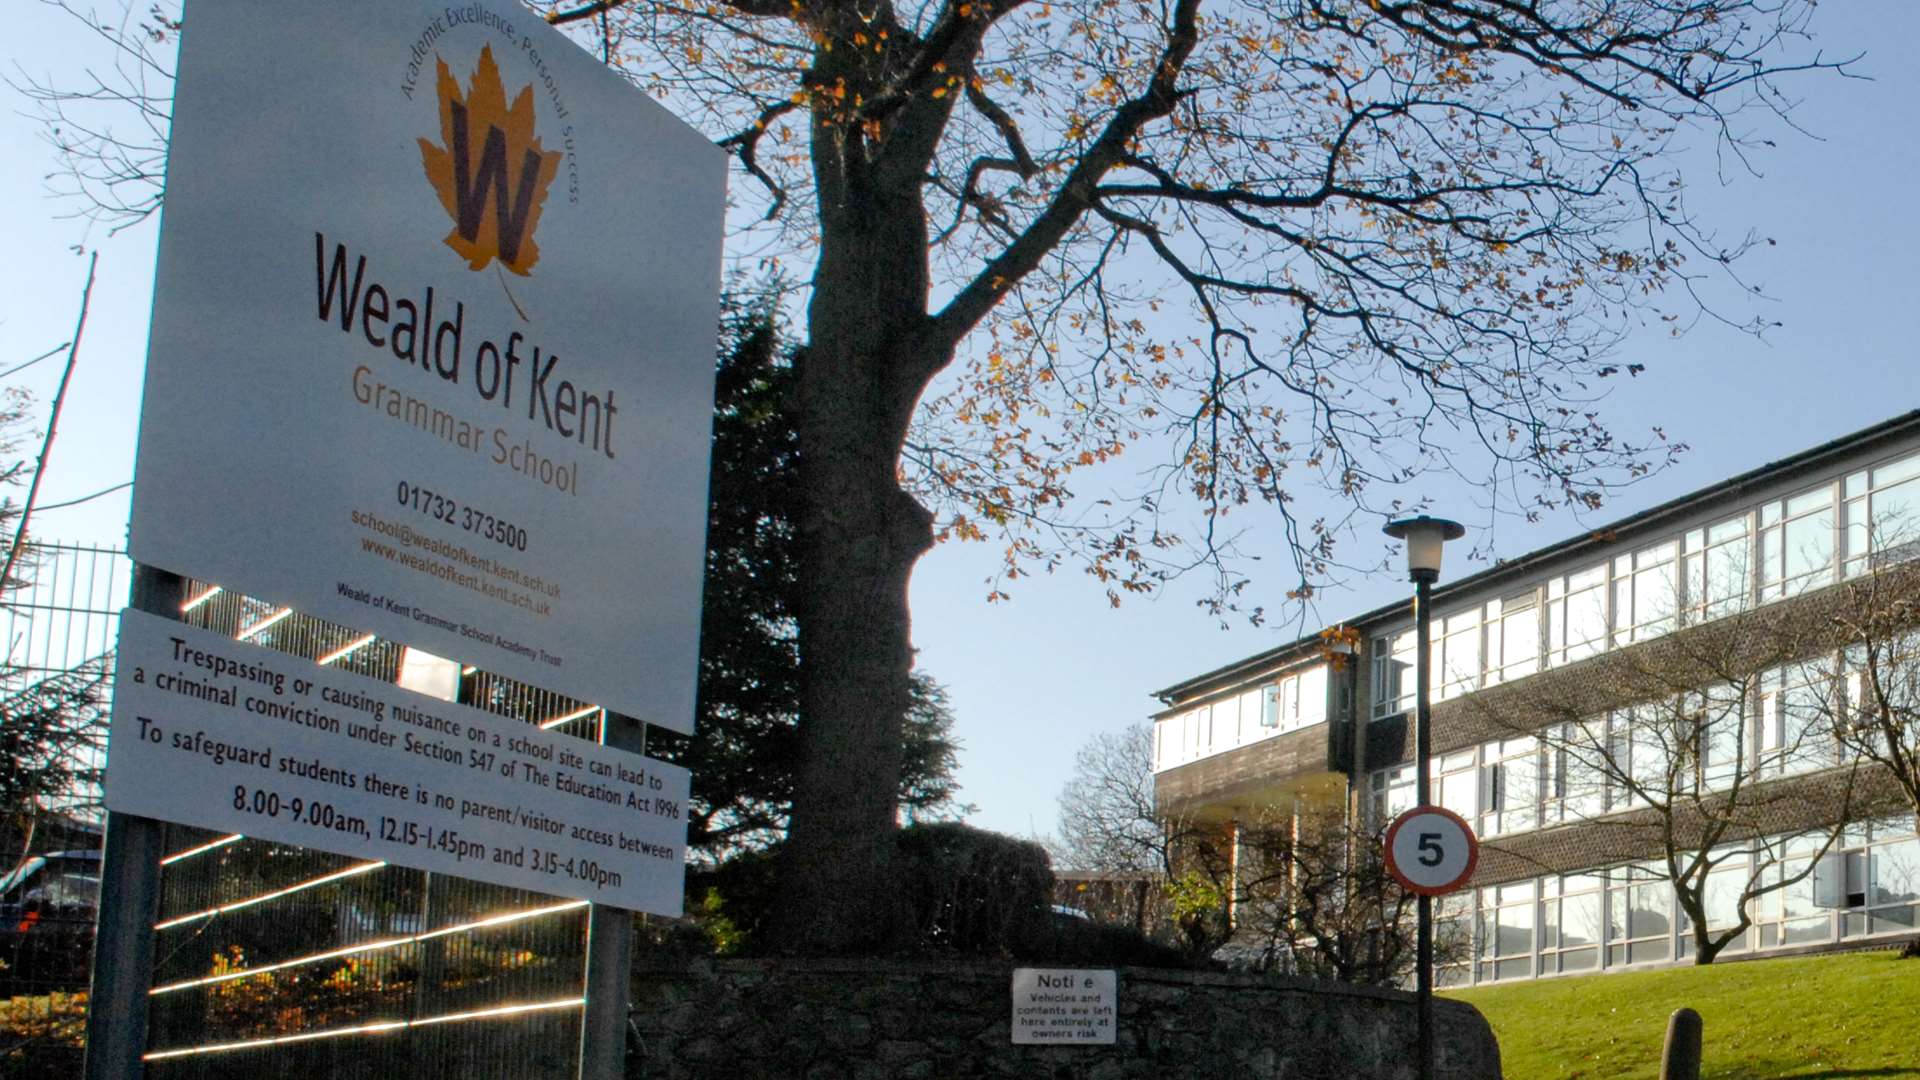 Weald of Kent Grammar School. Picture Matthew Walker